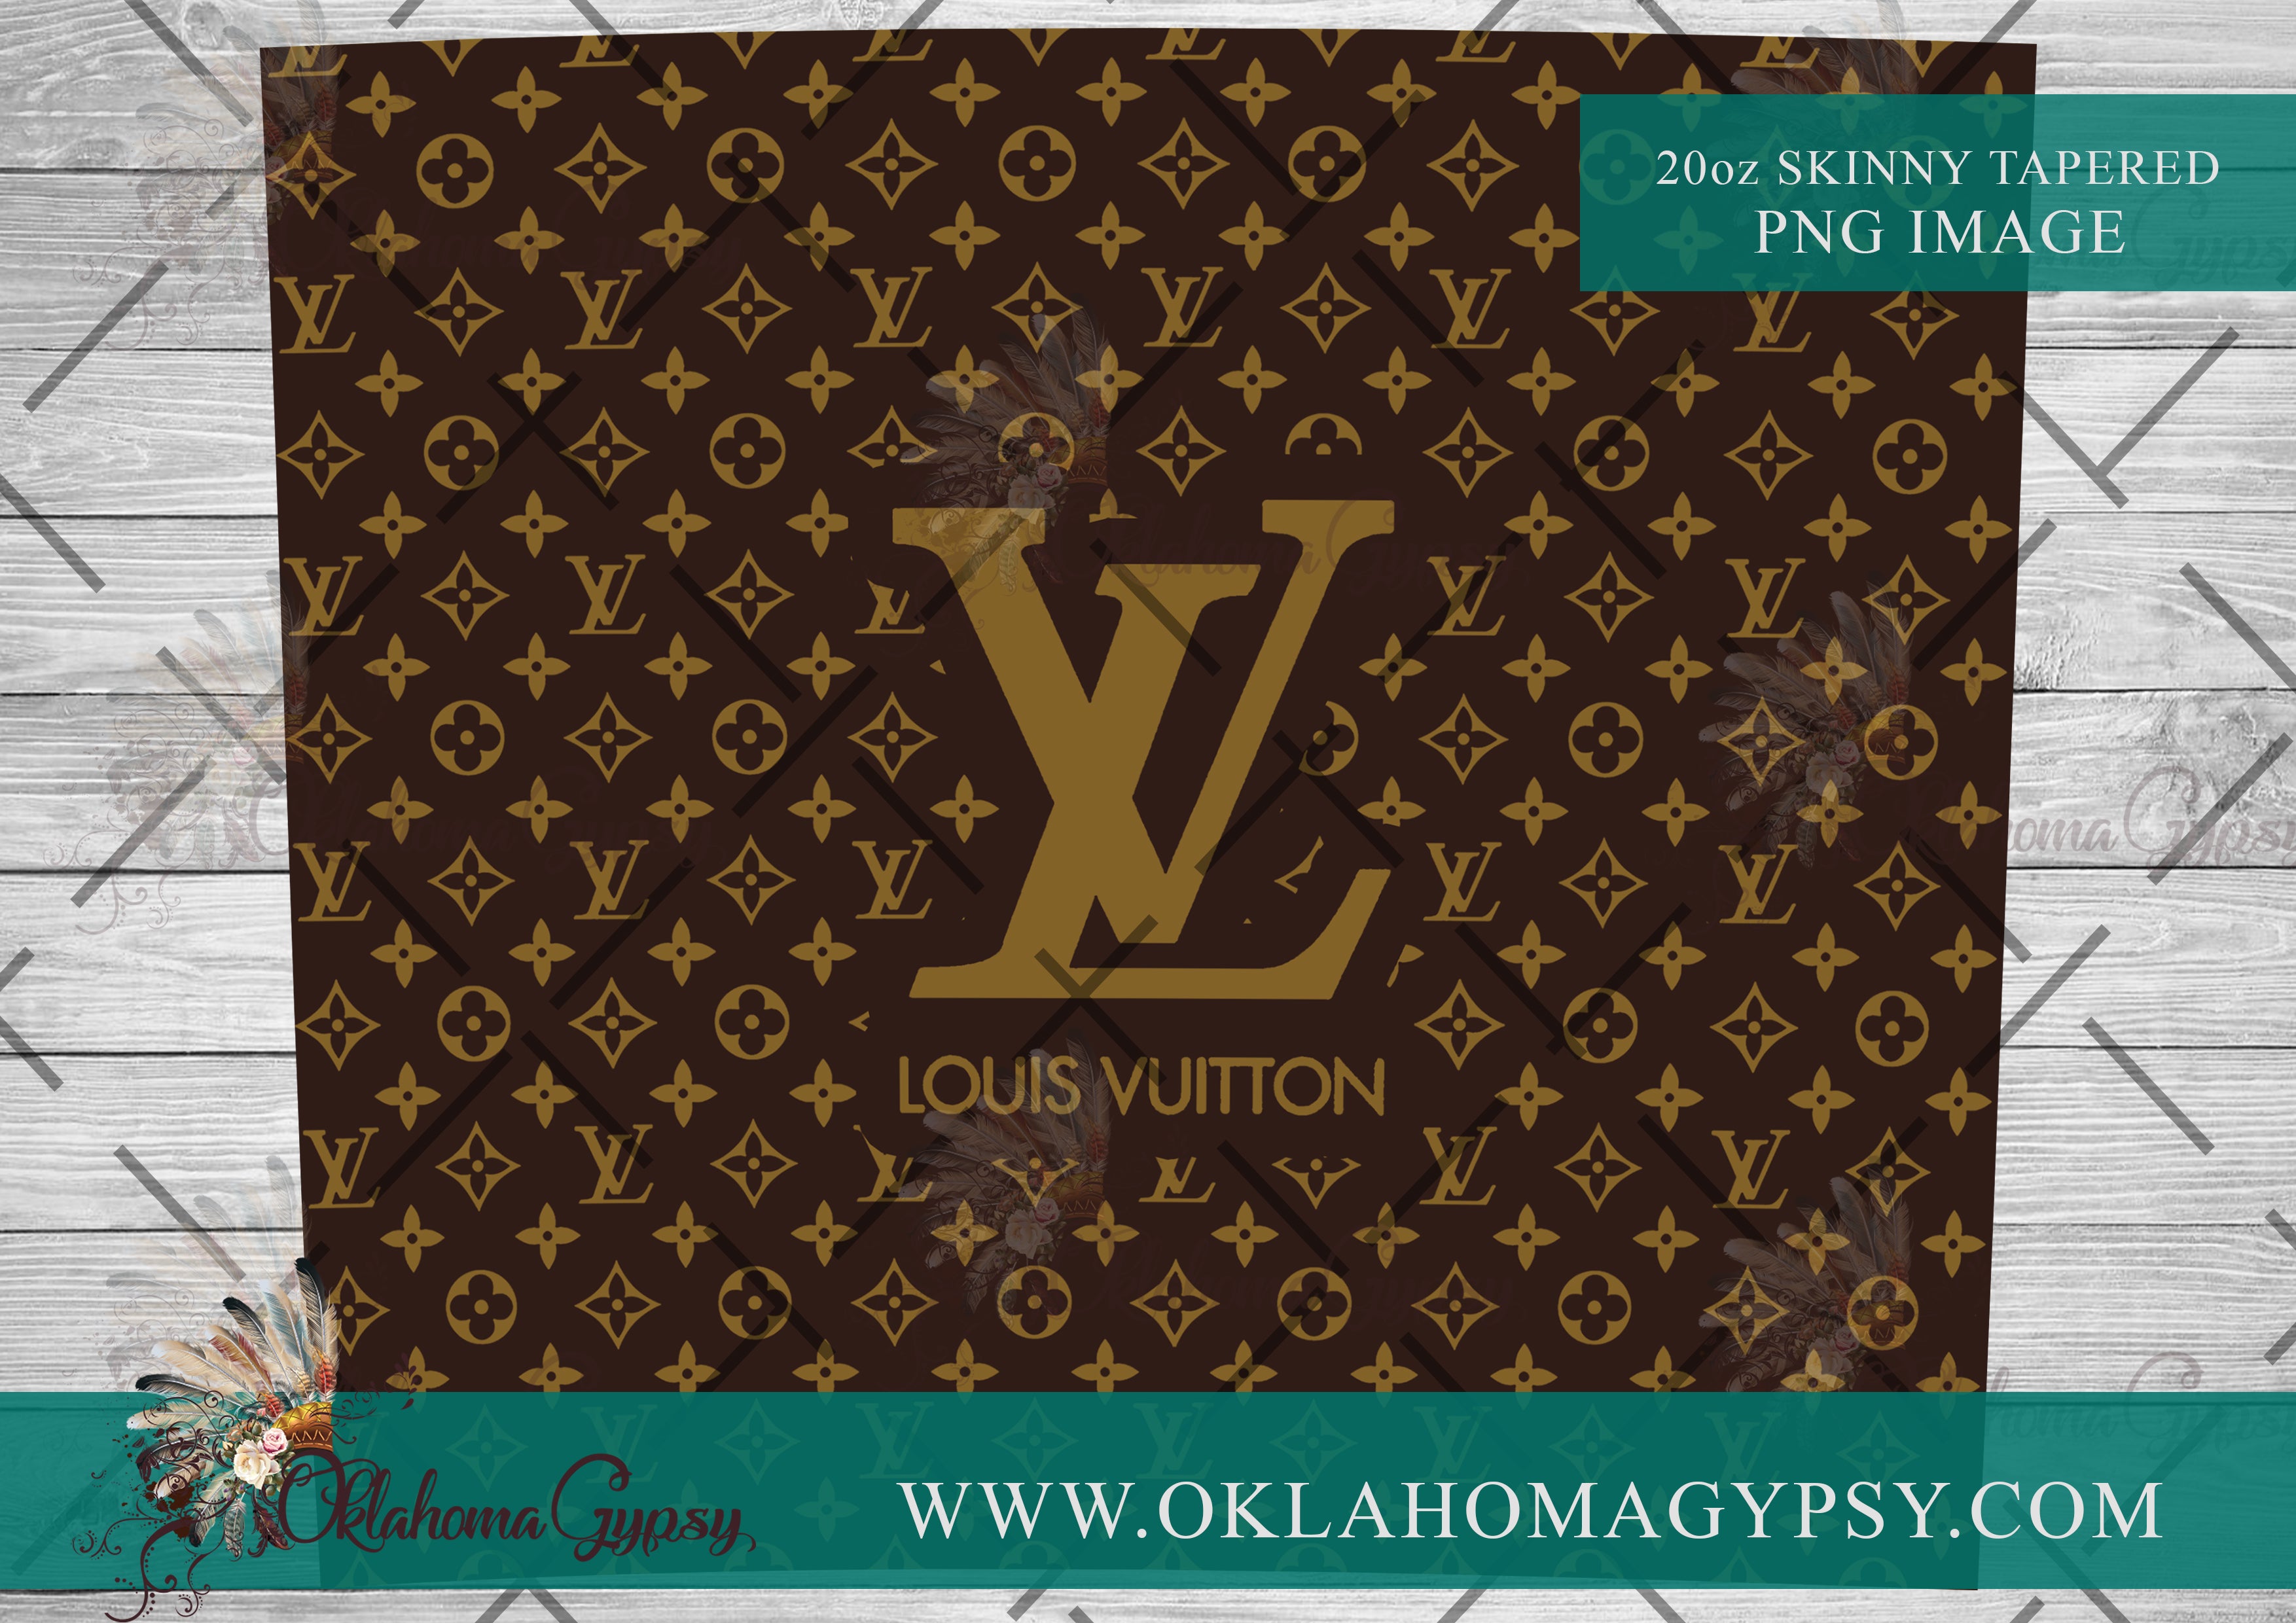 Louis Vuitton Pen Wraps Digital Download